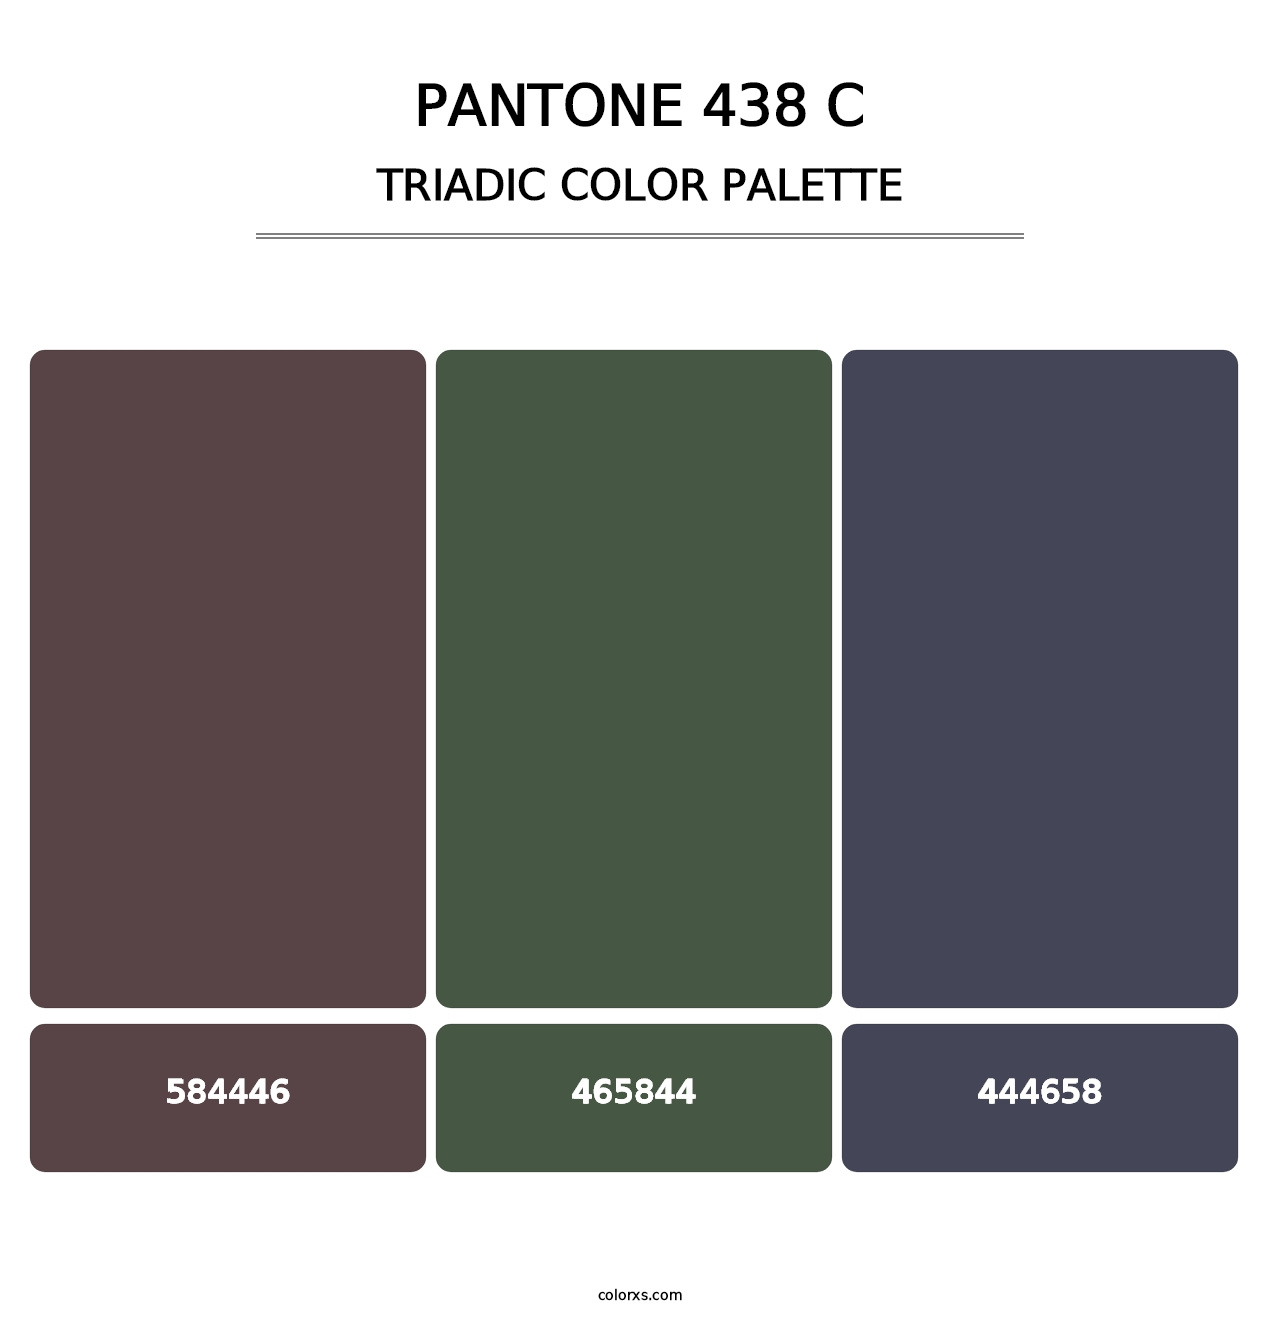 PANTONE 438 C - Triadic Color Palette